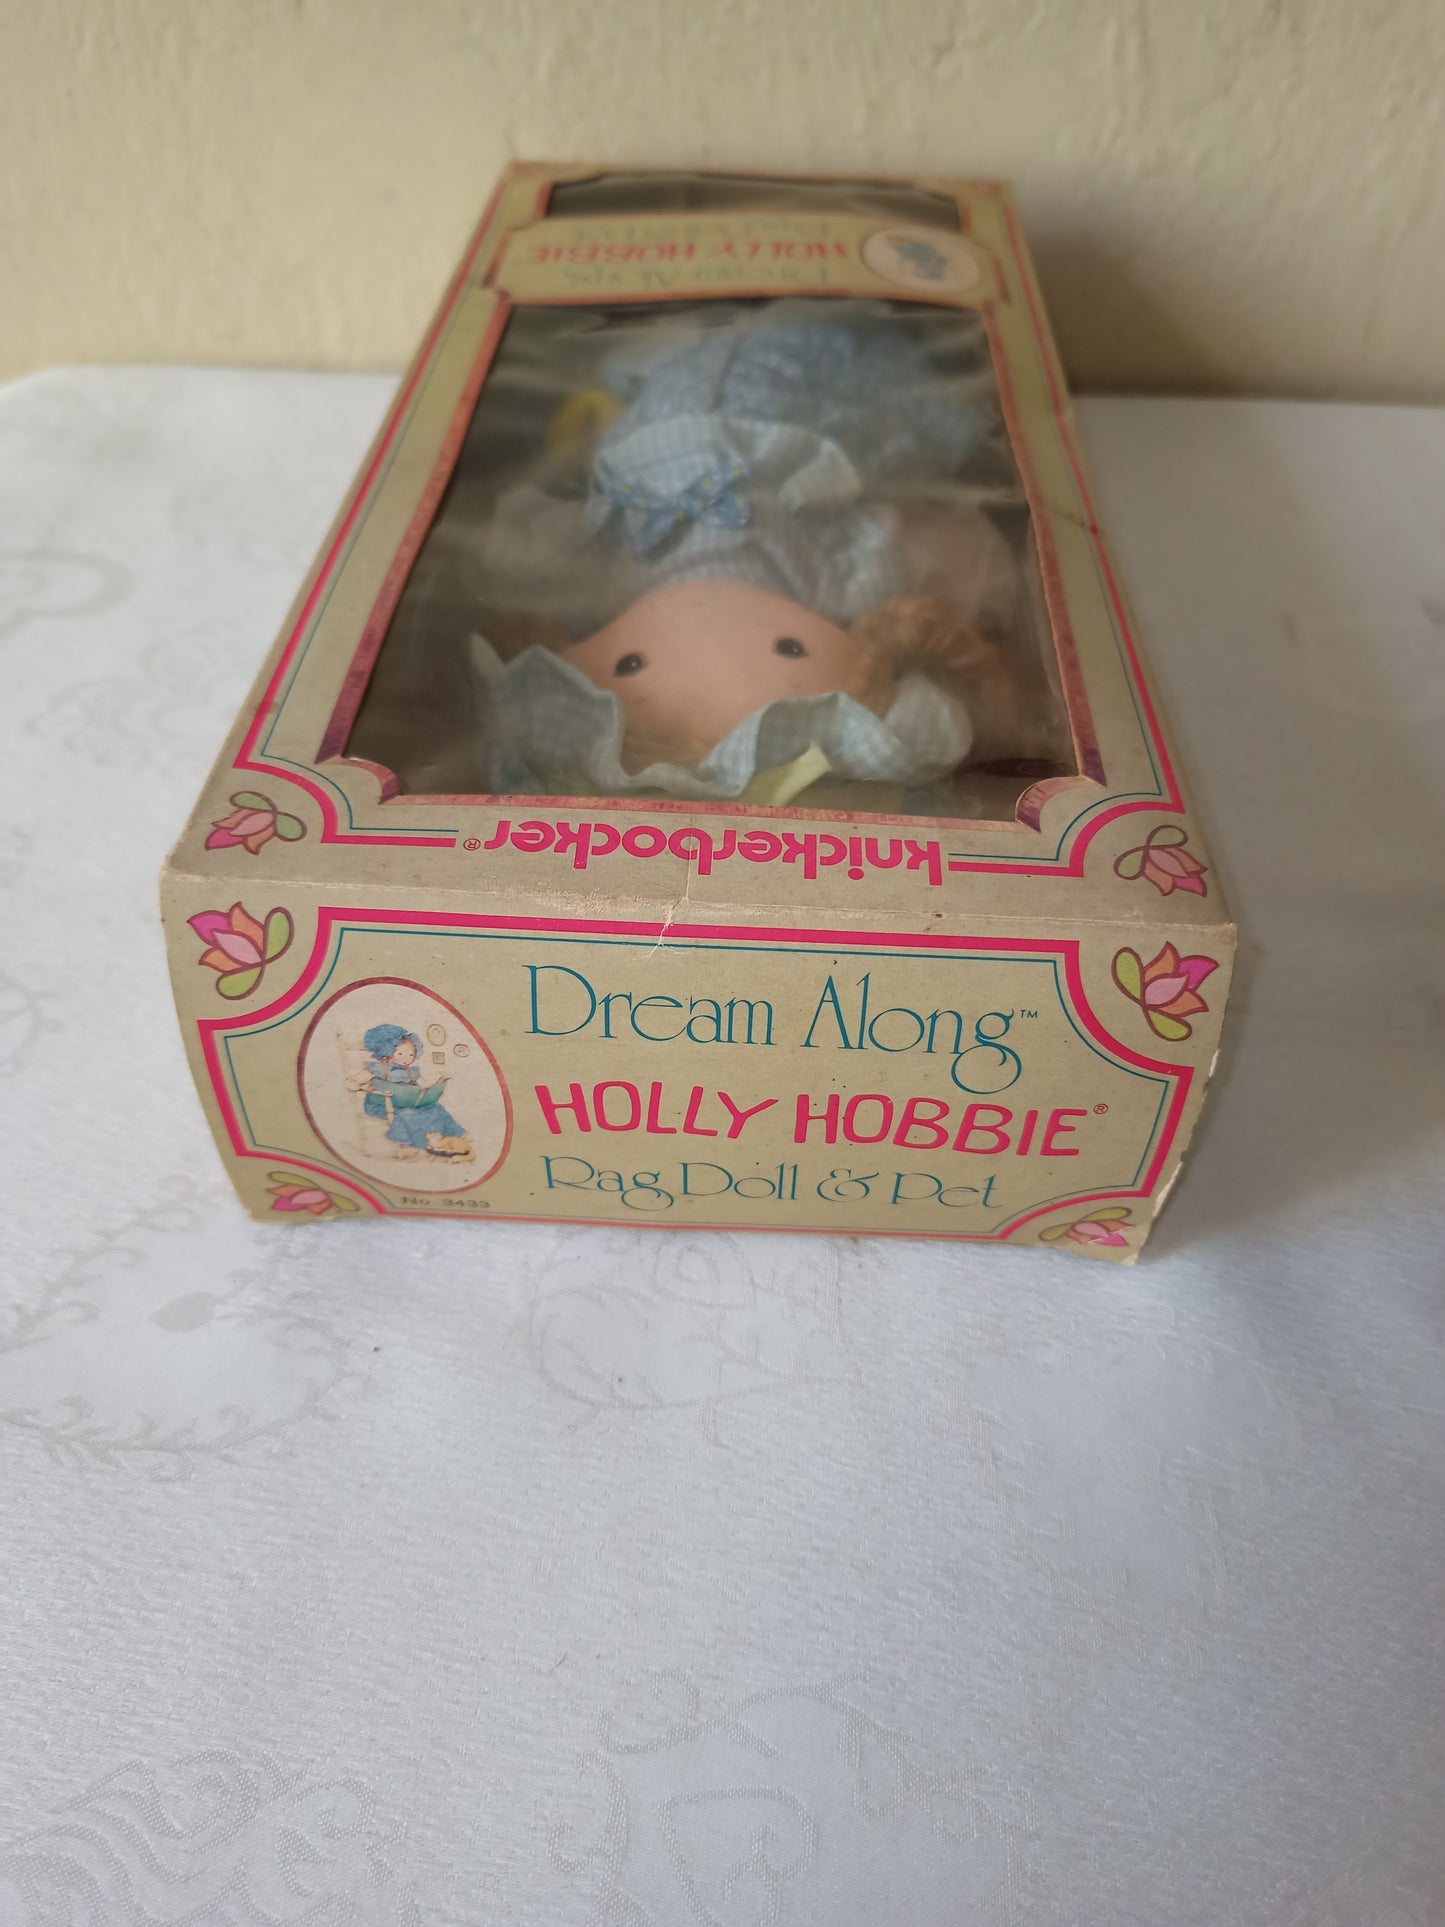 Bambola Holly Hobbie Dream a long, Knickerbocker originale anni 70